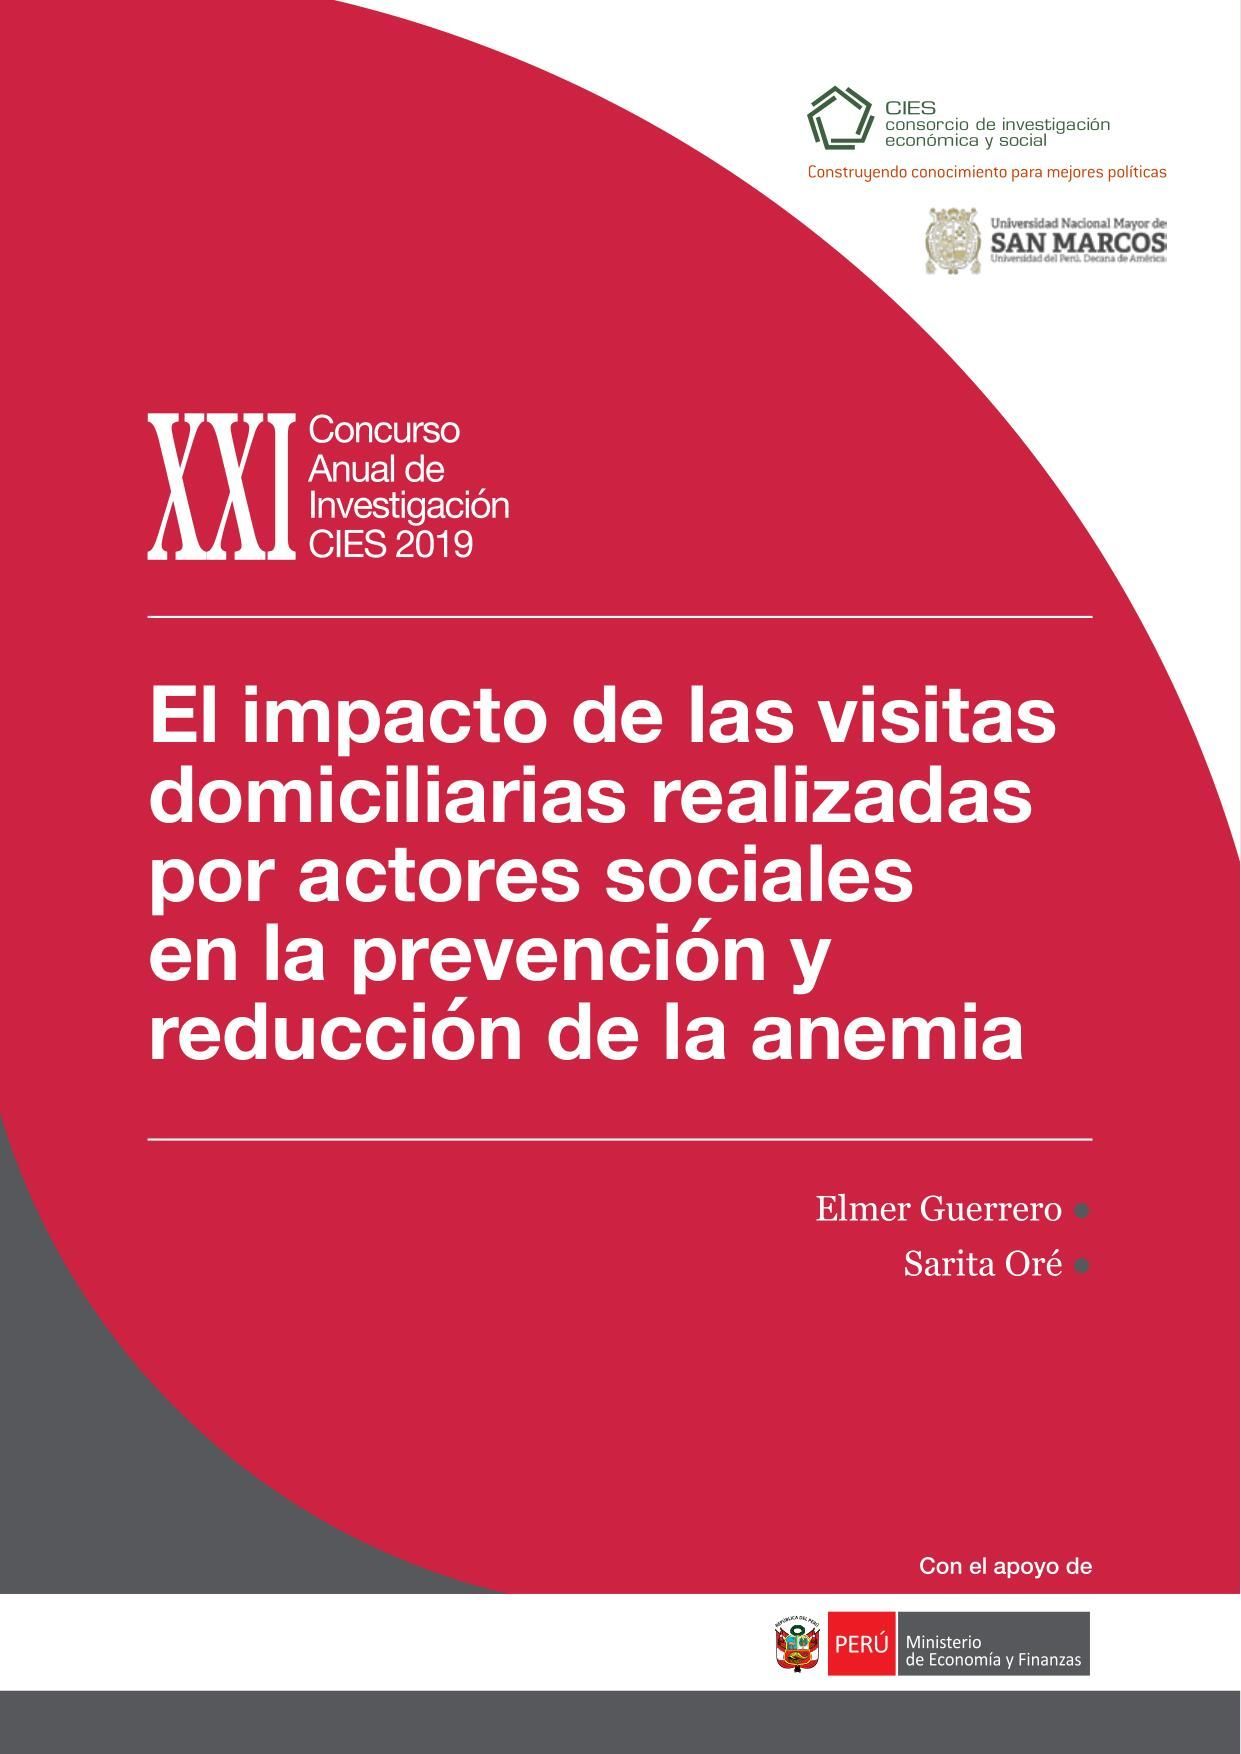 El impacto de las visitas domiciliarias realizadas por actores sociales en la prevención y reducción de la anemia